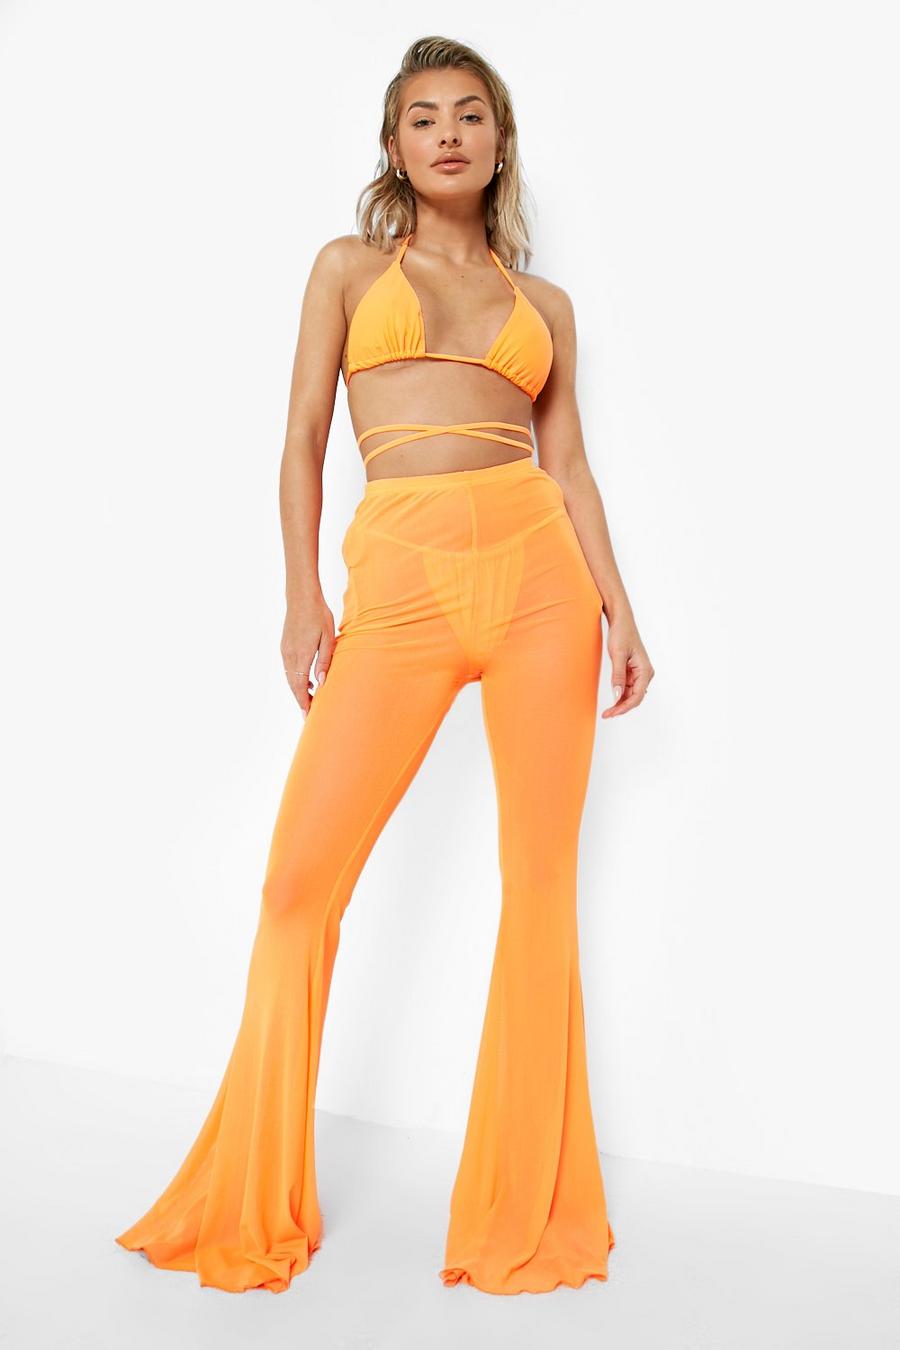 Pantaloni da mare a zampa in rete in colori fluo, Neon-orange arancio